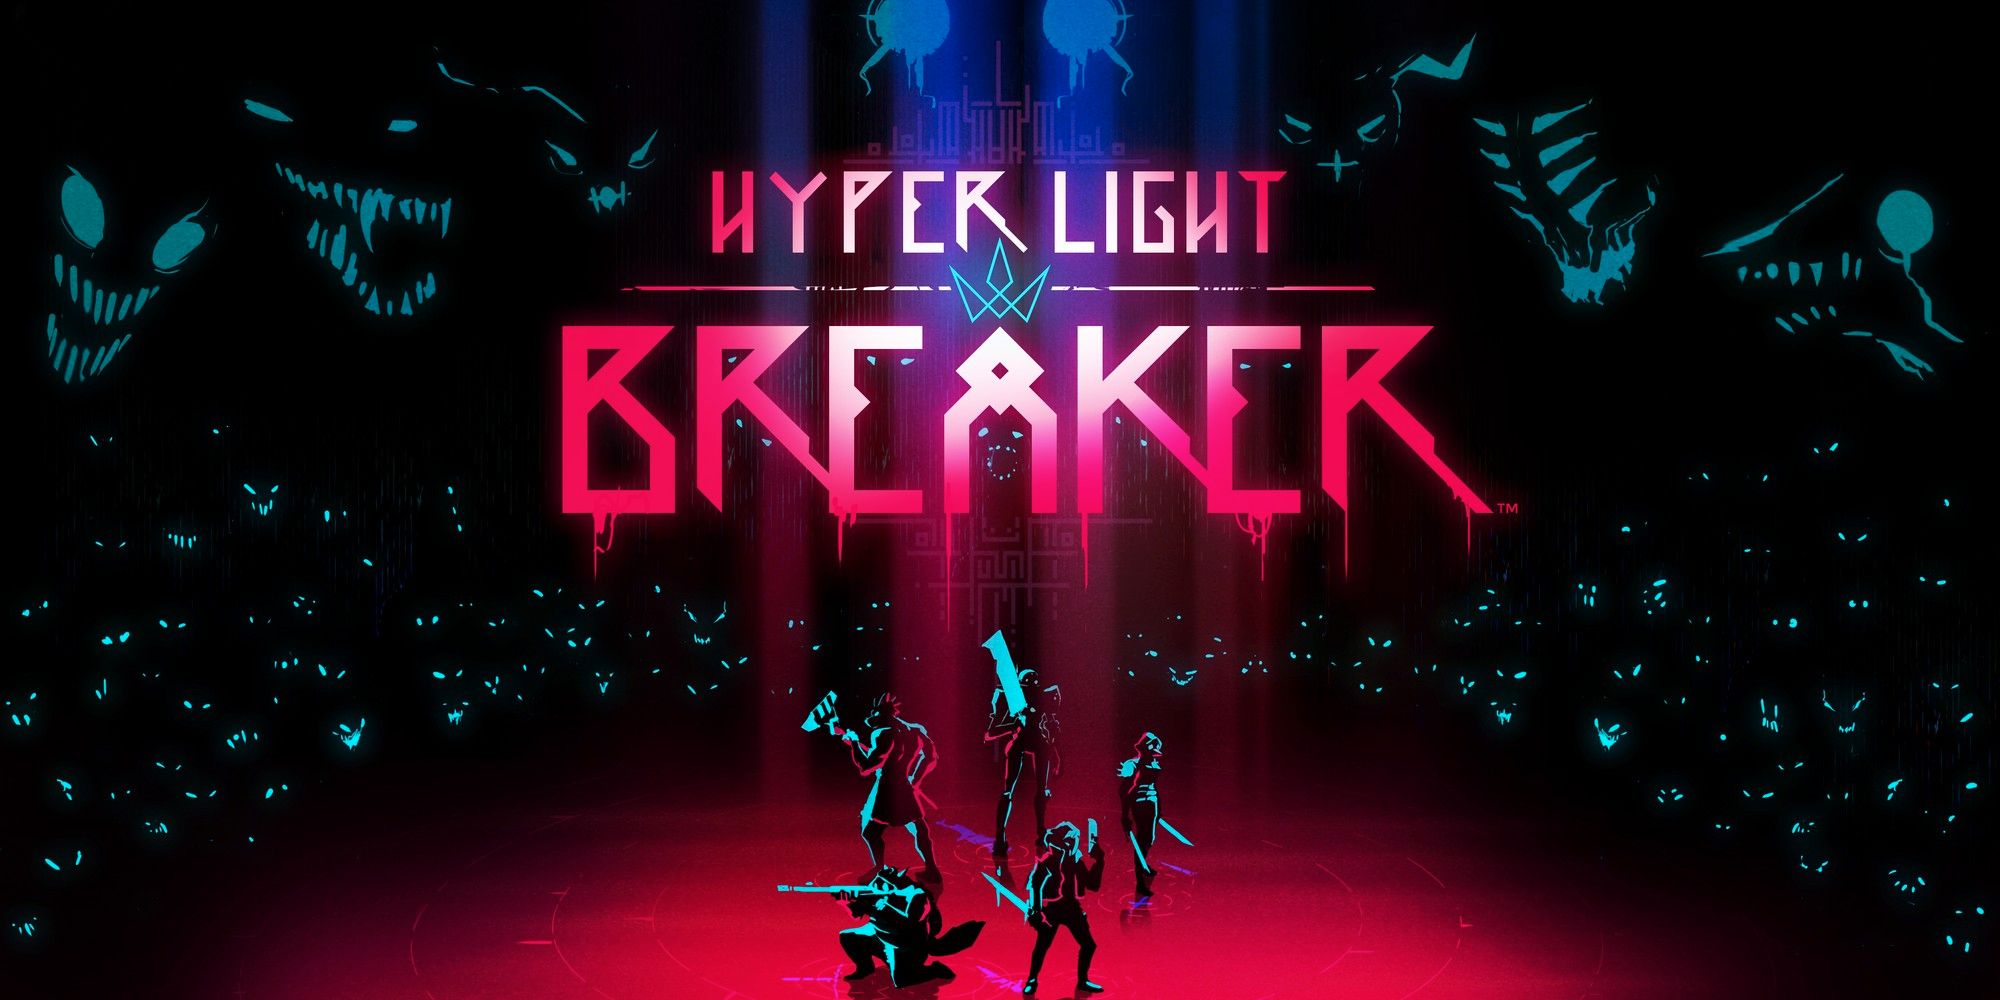 El universo de Hyper Light Drifter se expande en el nuevo juego Hyper Light Breaker